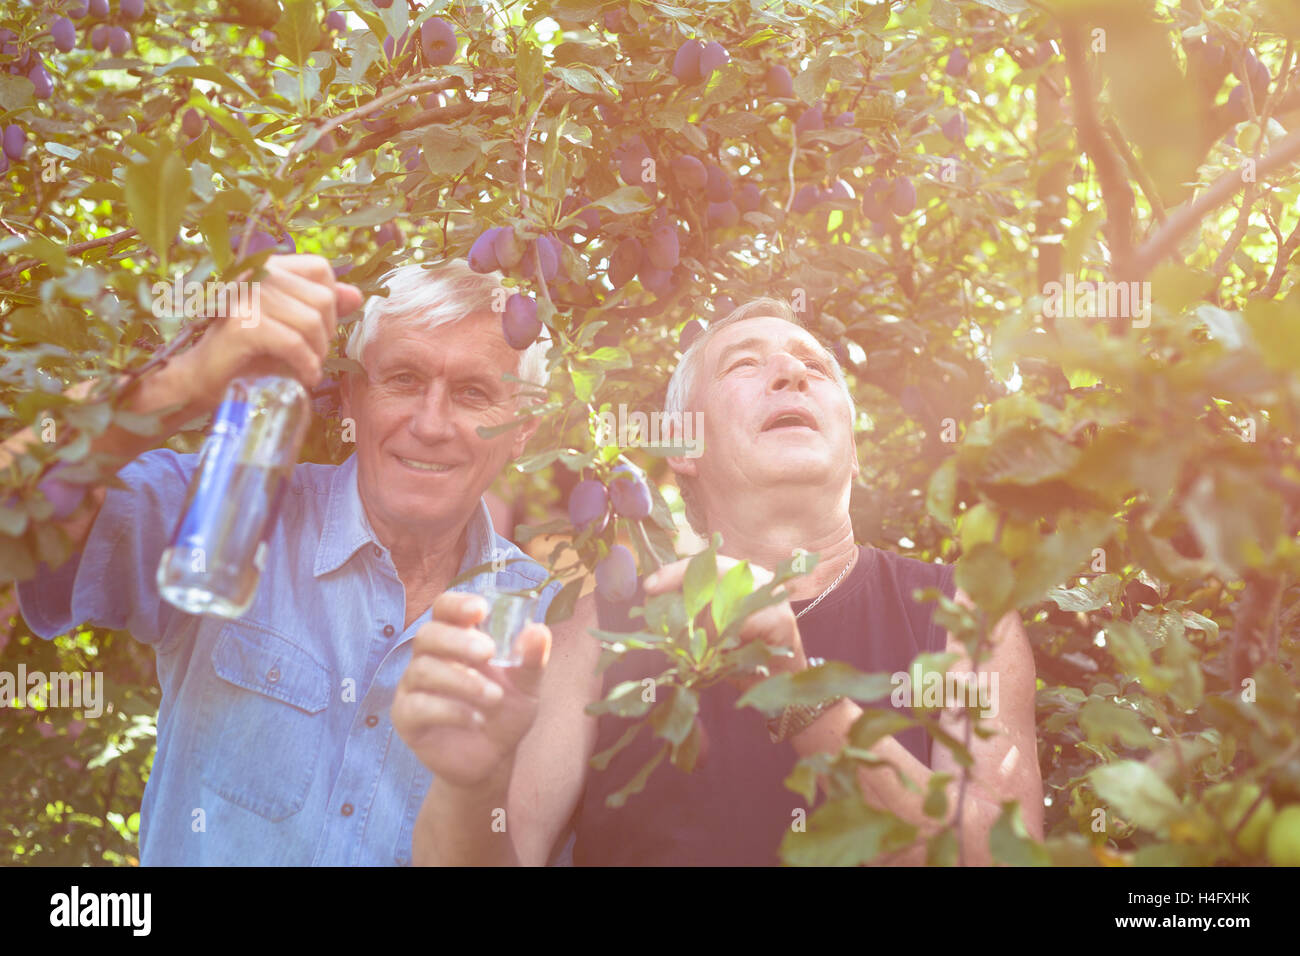 Dos emocionados ancianos con botella de alcohol disfrutar de días soleados al aire libre bajo el ciruelo. Foto de stock